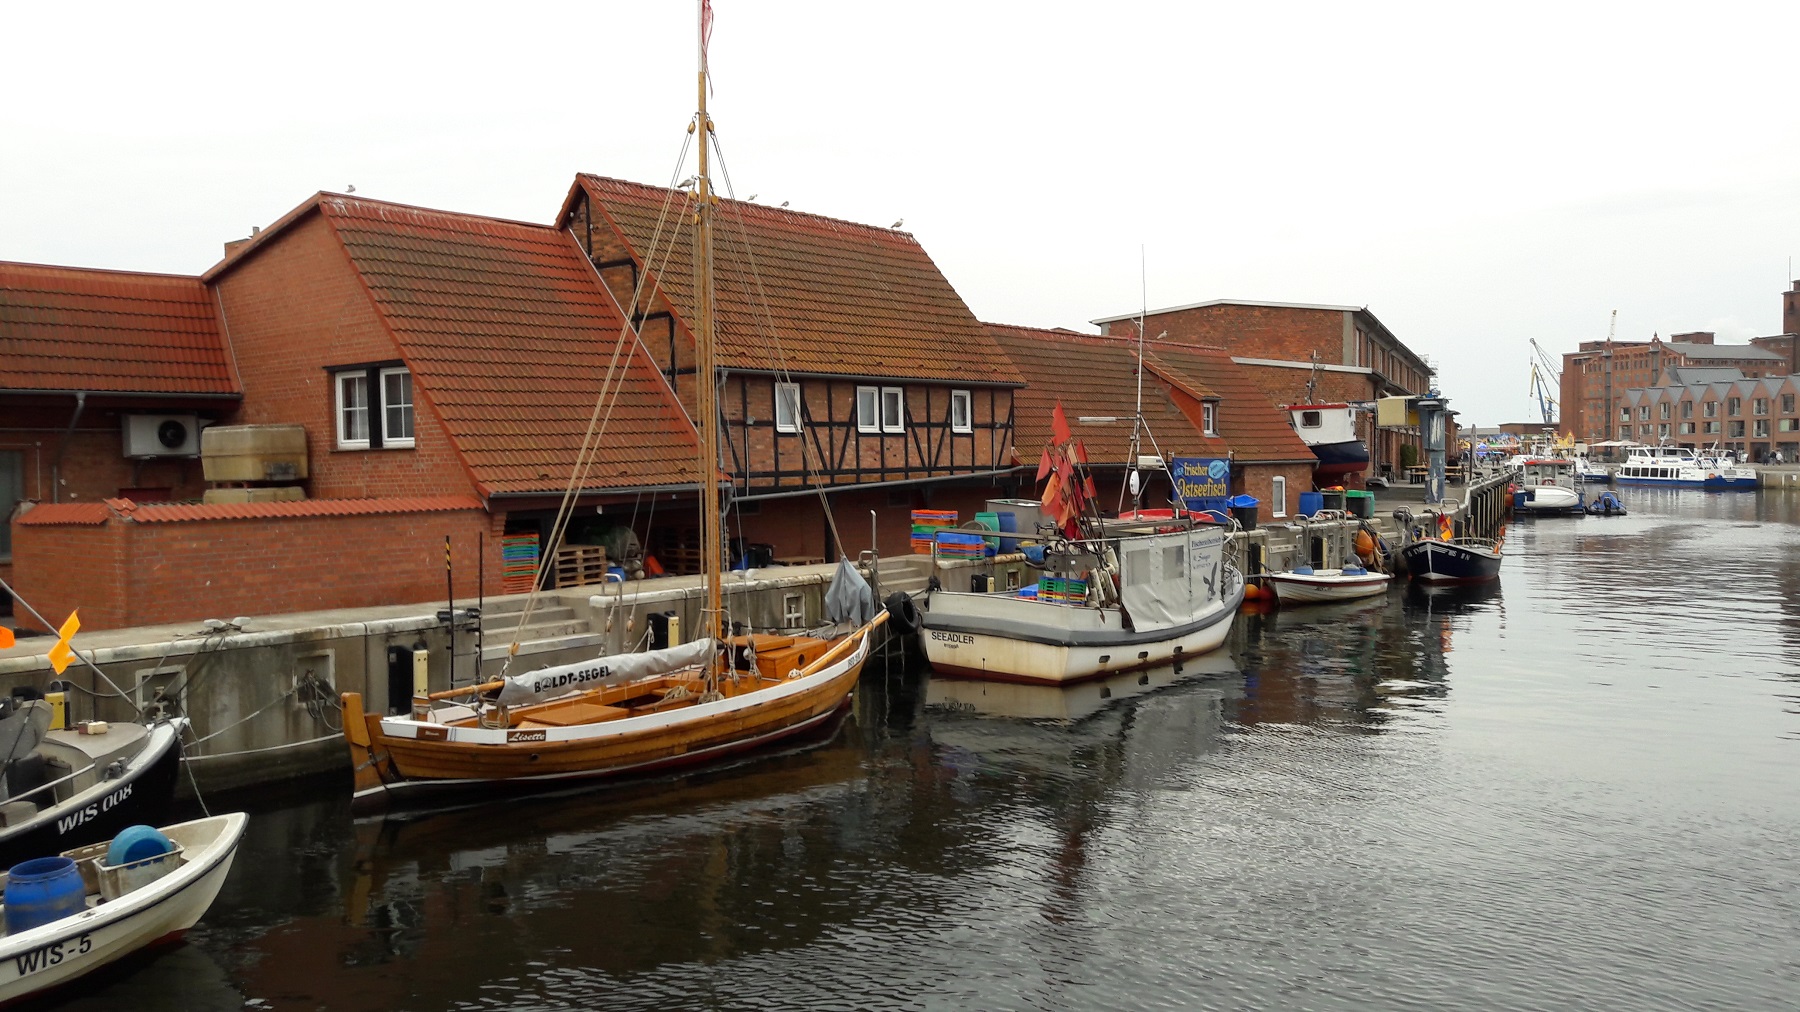 Old Harbor, Wismar